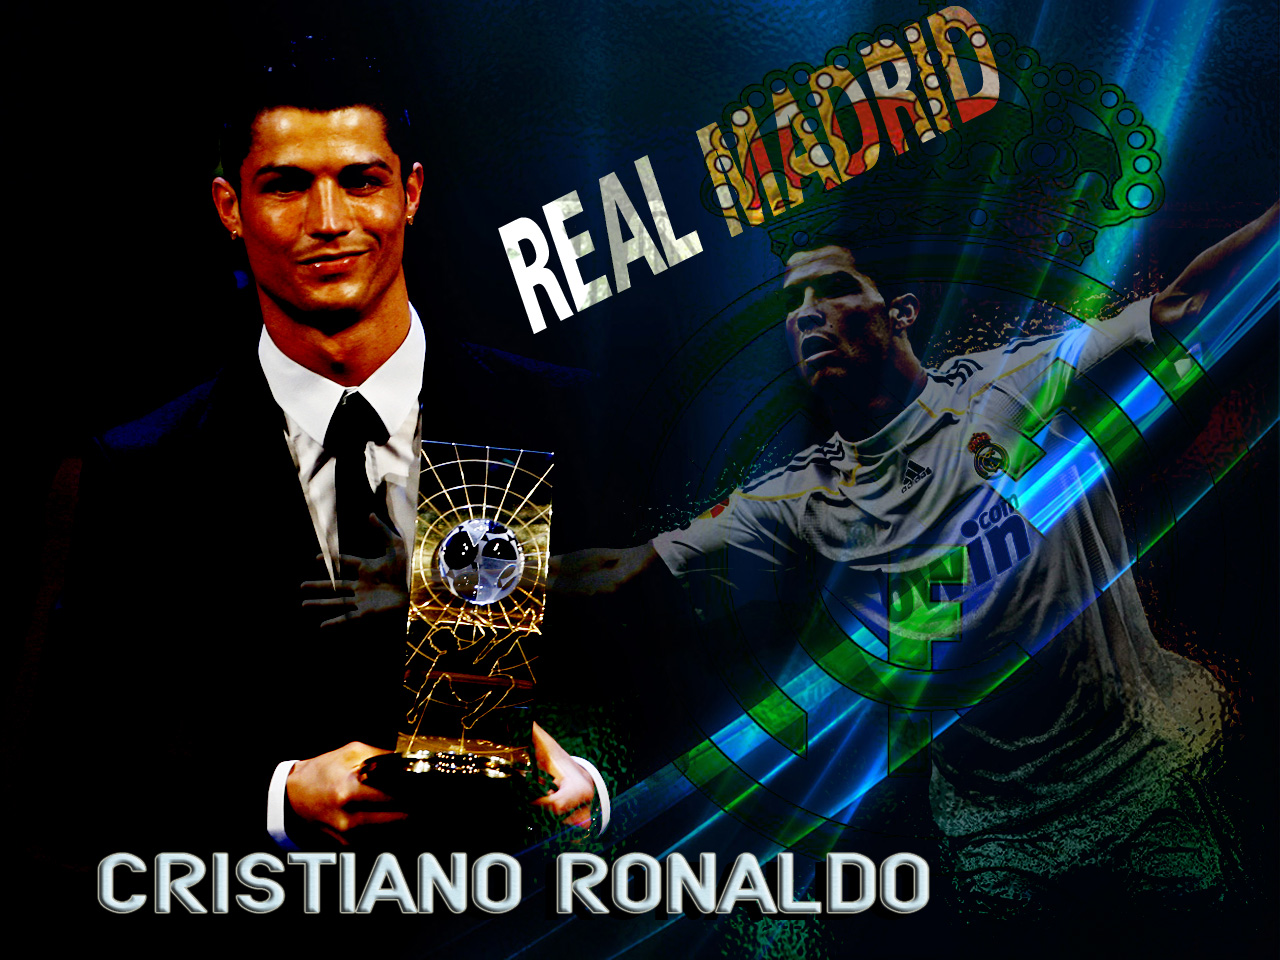 http://3.bp.blogspot.com/_T0UP2pQgRfA/TIzRX3MhrmI/AAAAAAAABQw/Po3bPT1sxwU/s1600/Cristiano-Ronaldo-Real-Madrid-01.jpg